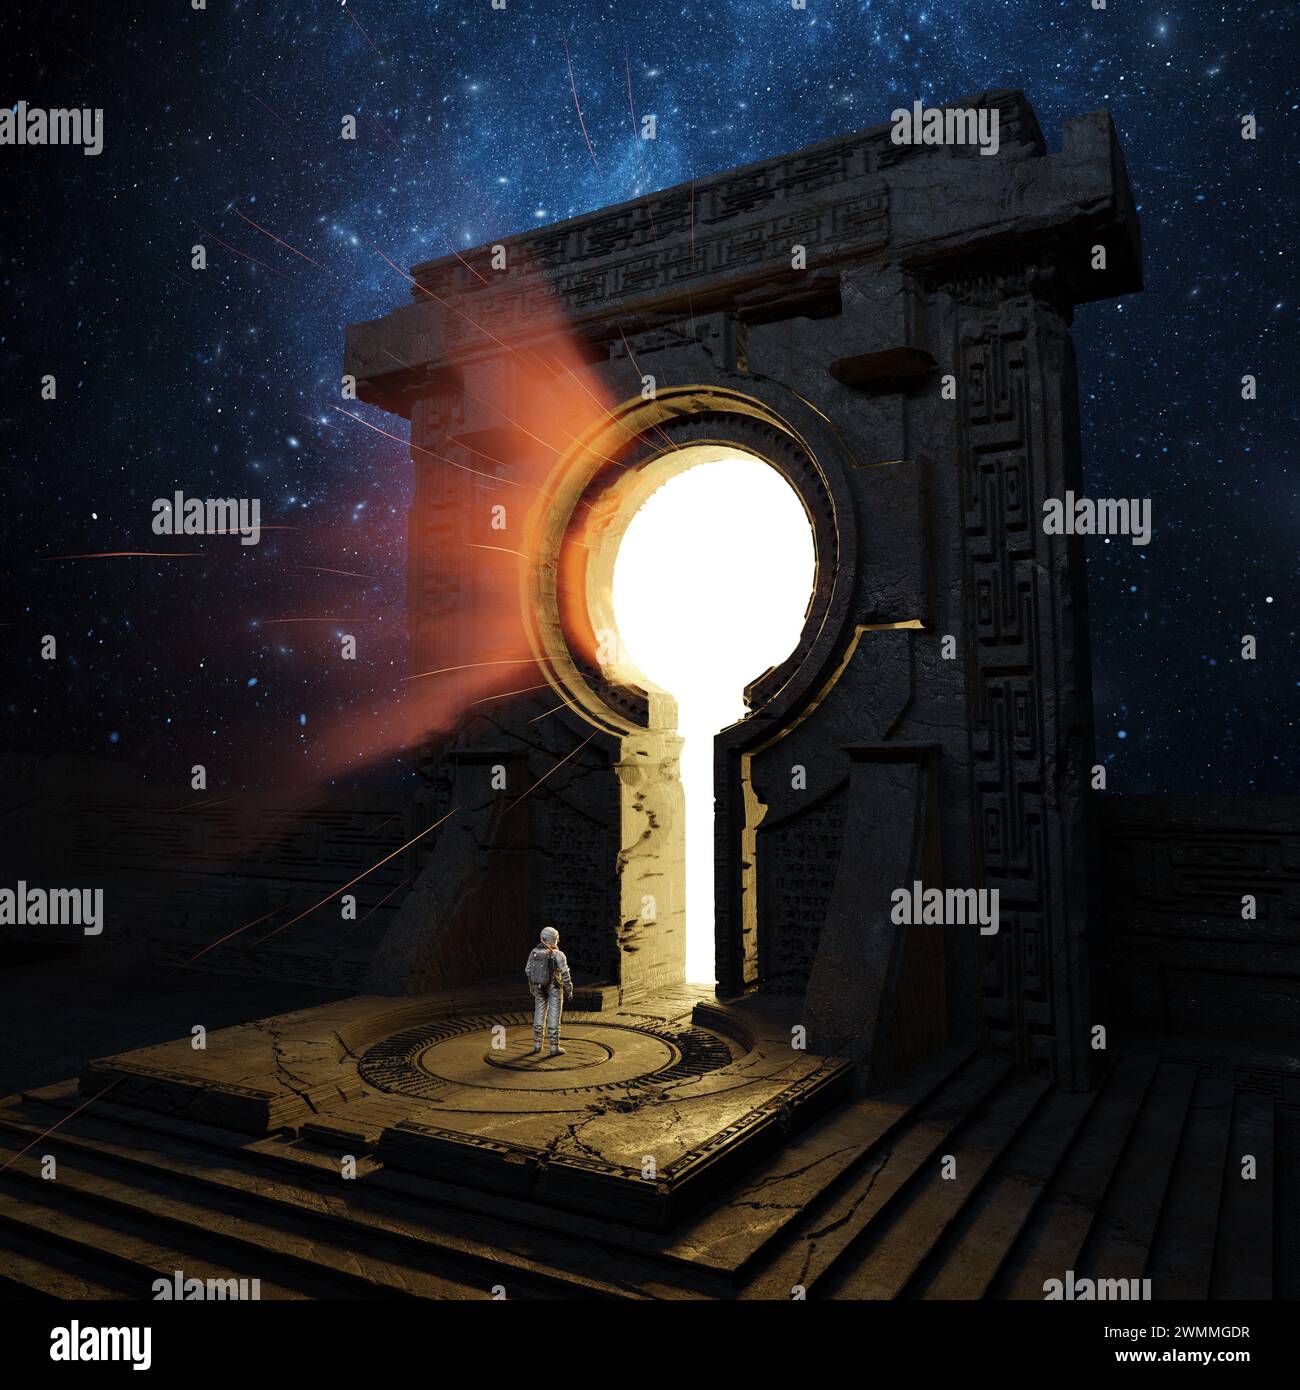 Astronaut gegenüber einem antiken Portal, das ein helles Licht vor der kosmischen Kulisse der Sterne ausstrahlt. Kosmonaut und stargate-Eingang. 3D-Rendering Stockfoto